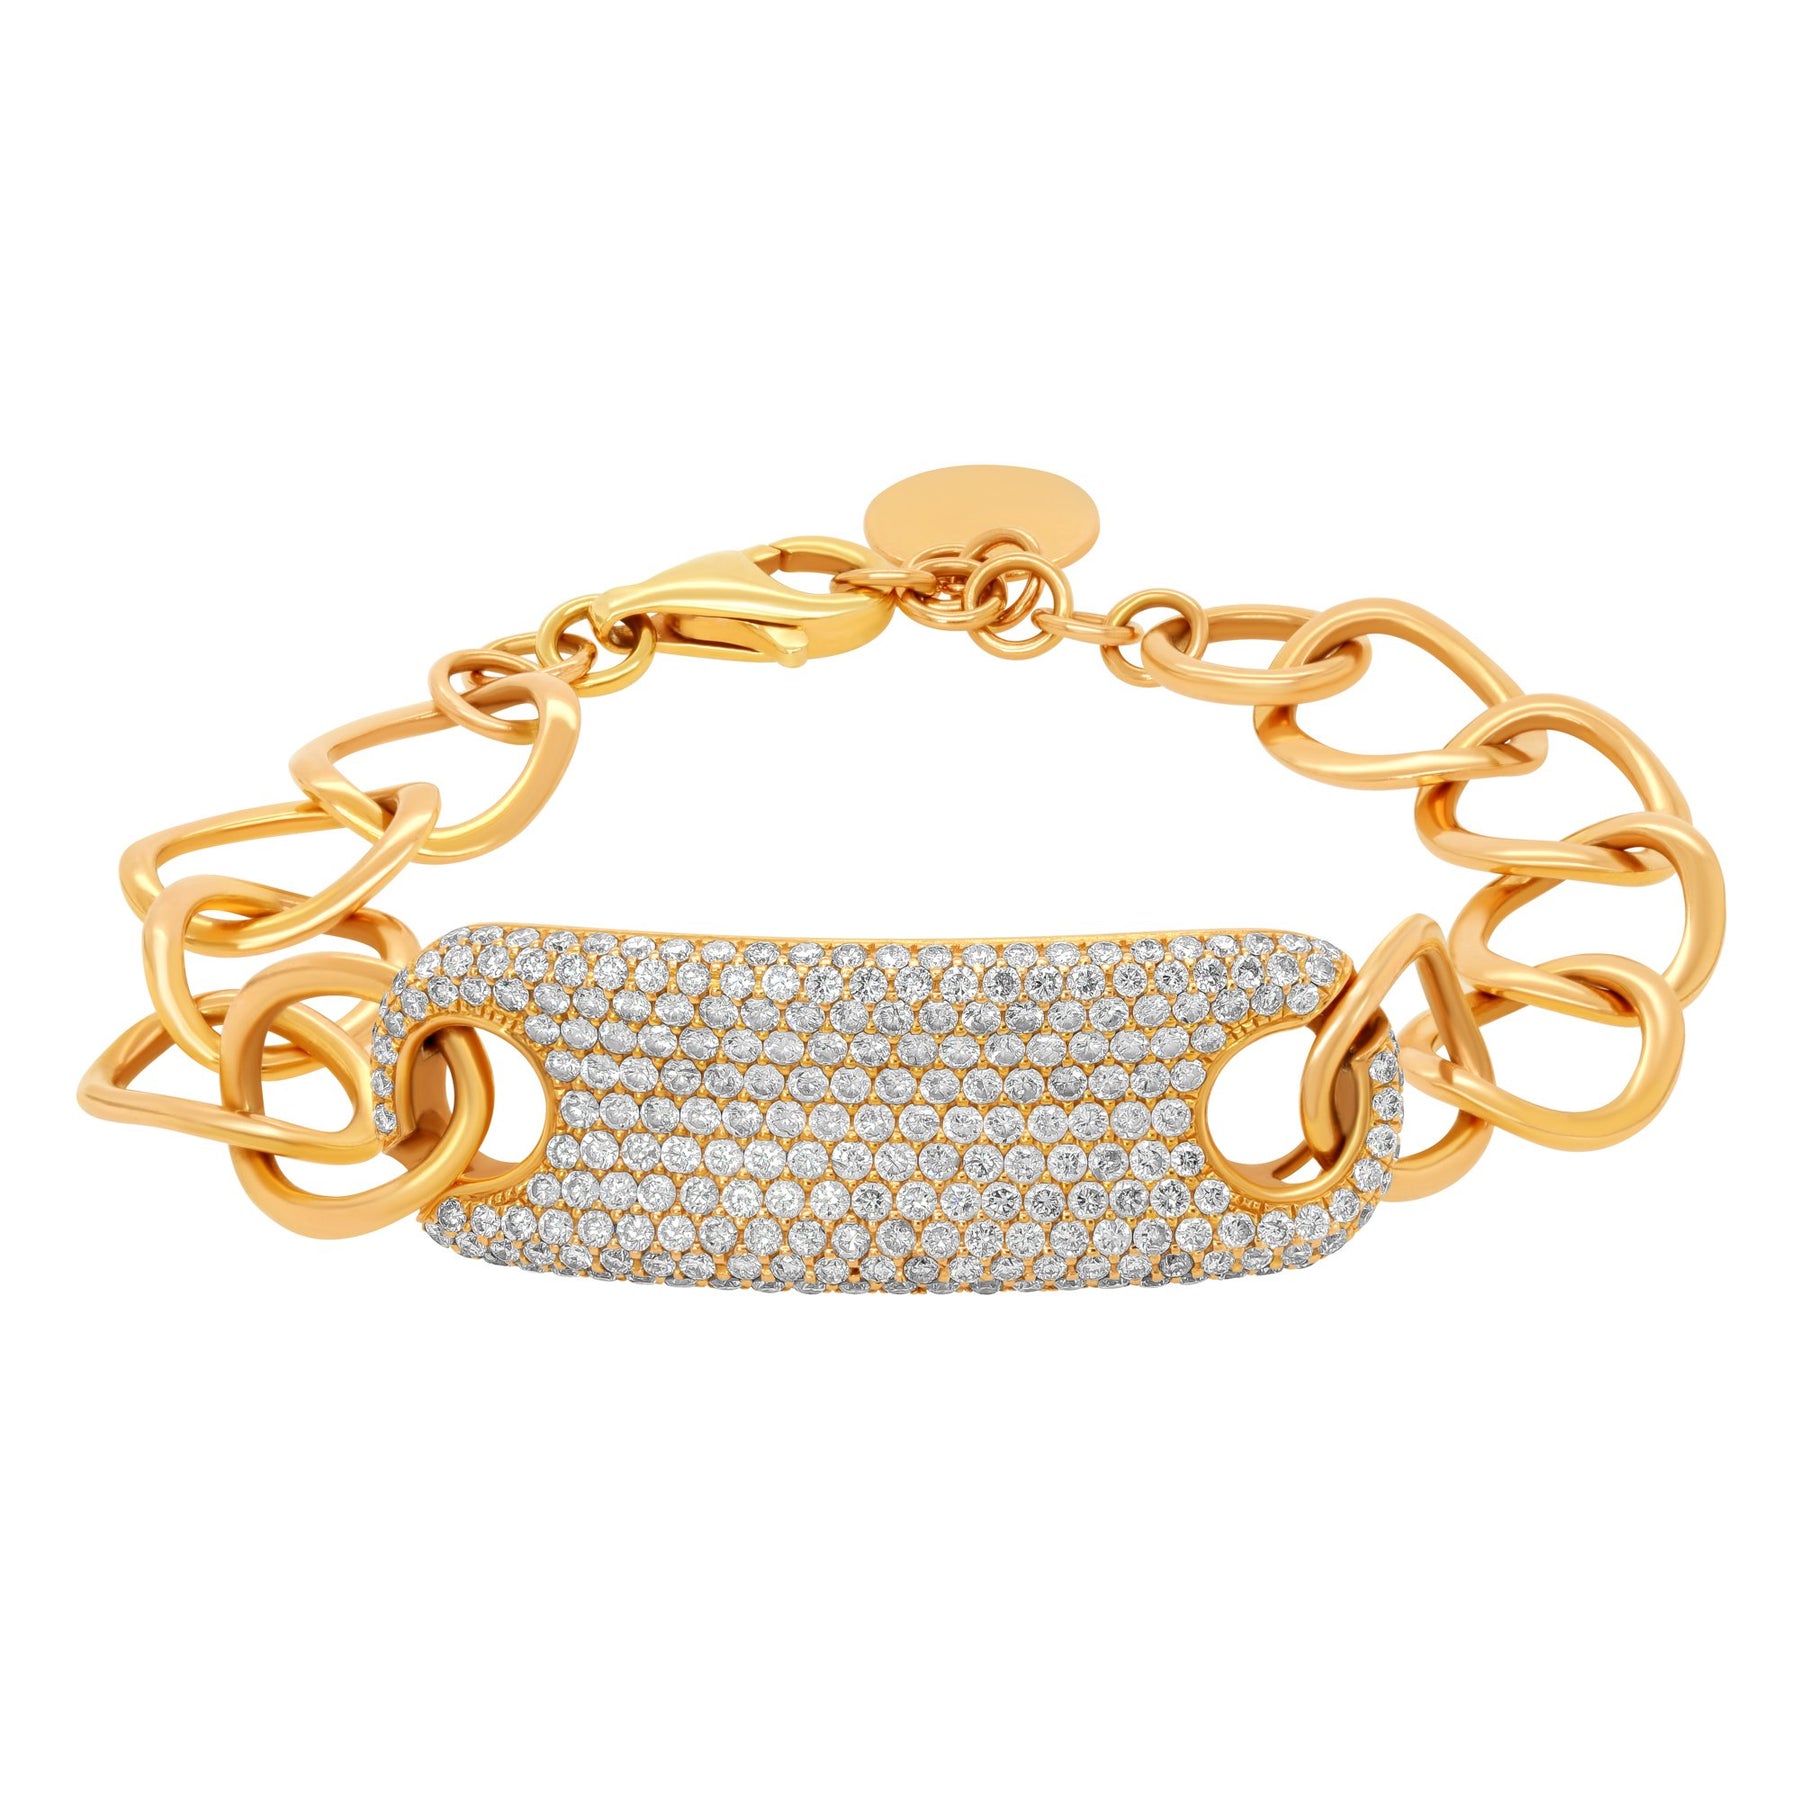 SAINT LAURENT Leather and gold-tone bracelet | NET-A-PORTER